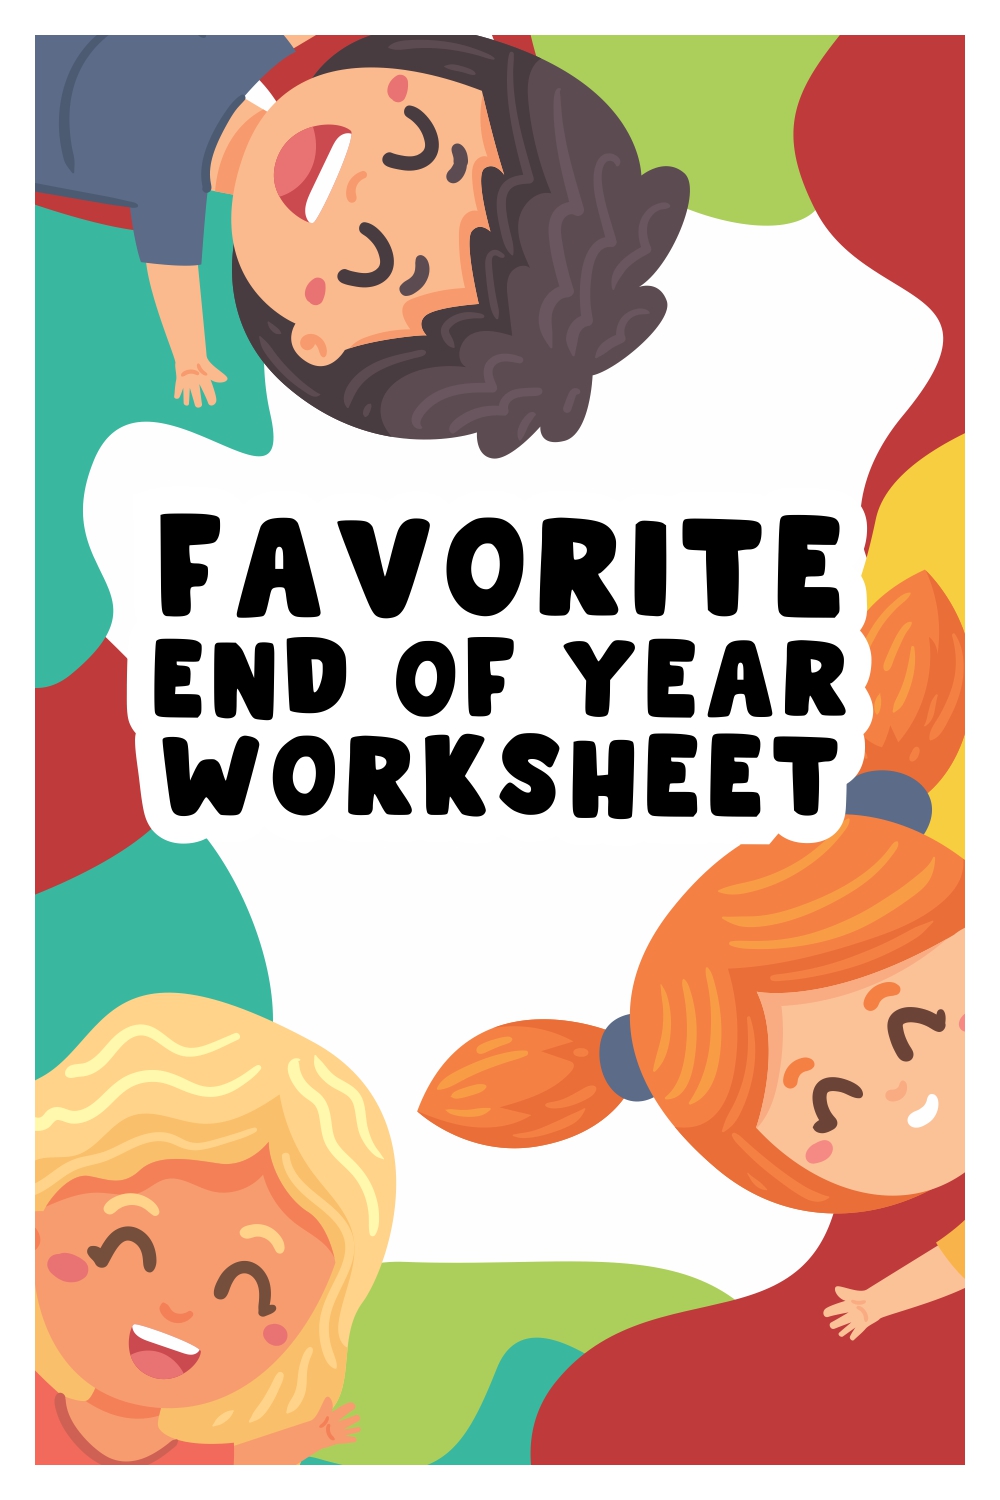 Favorite End of Year Worksheet